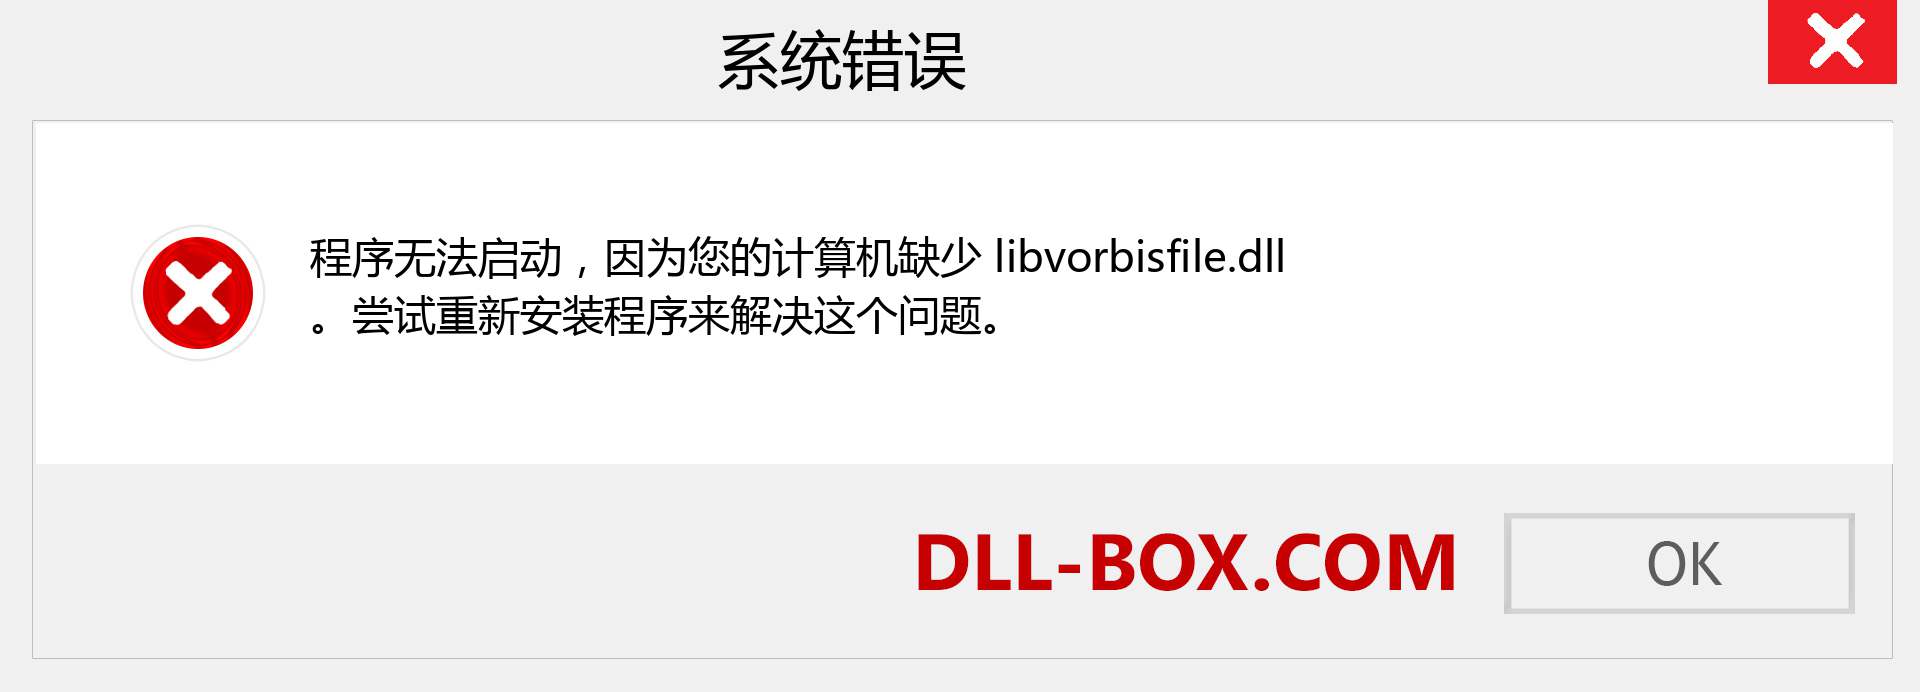 libvorbisfile.dll 文件丢失？。 适用于 Windows 7、8、10 的下载 - 修复 Windows、照片、图像上的 libvorbisfile dll 丢失错误